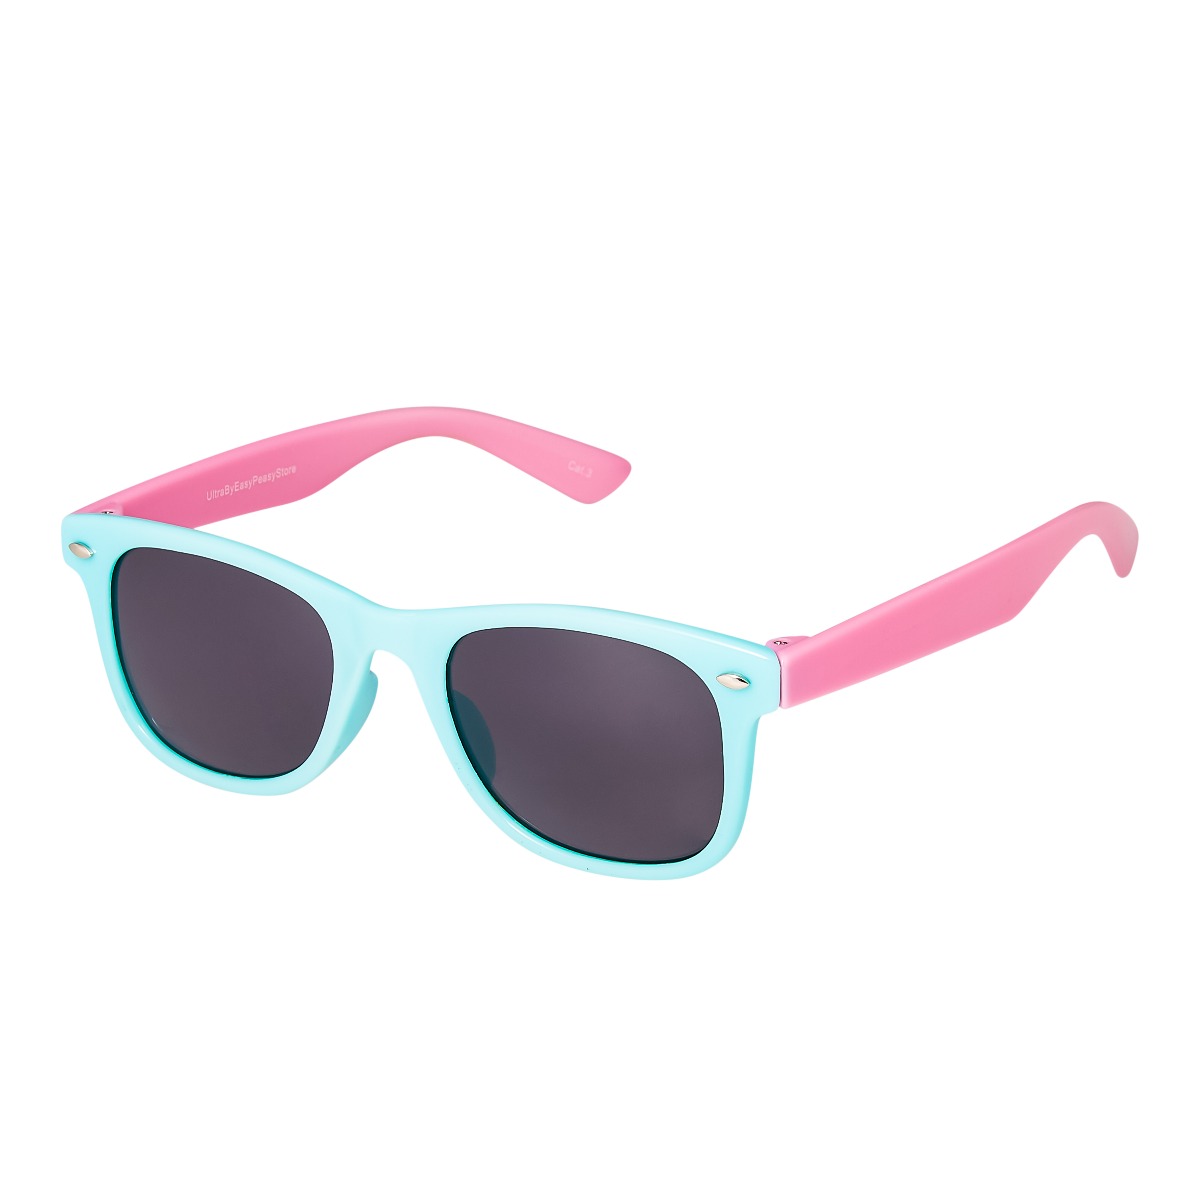 2Pcs Outdoor Kids Frame Girls Children Toddler Popular Sunglasses Boys UV400 